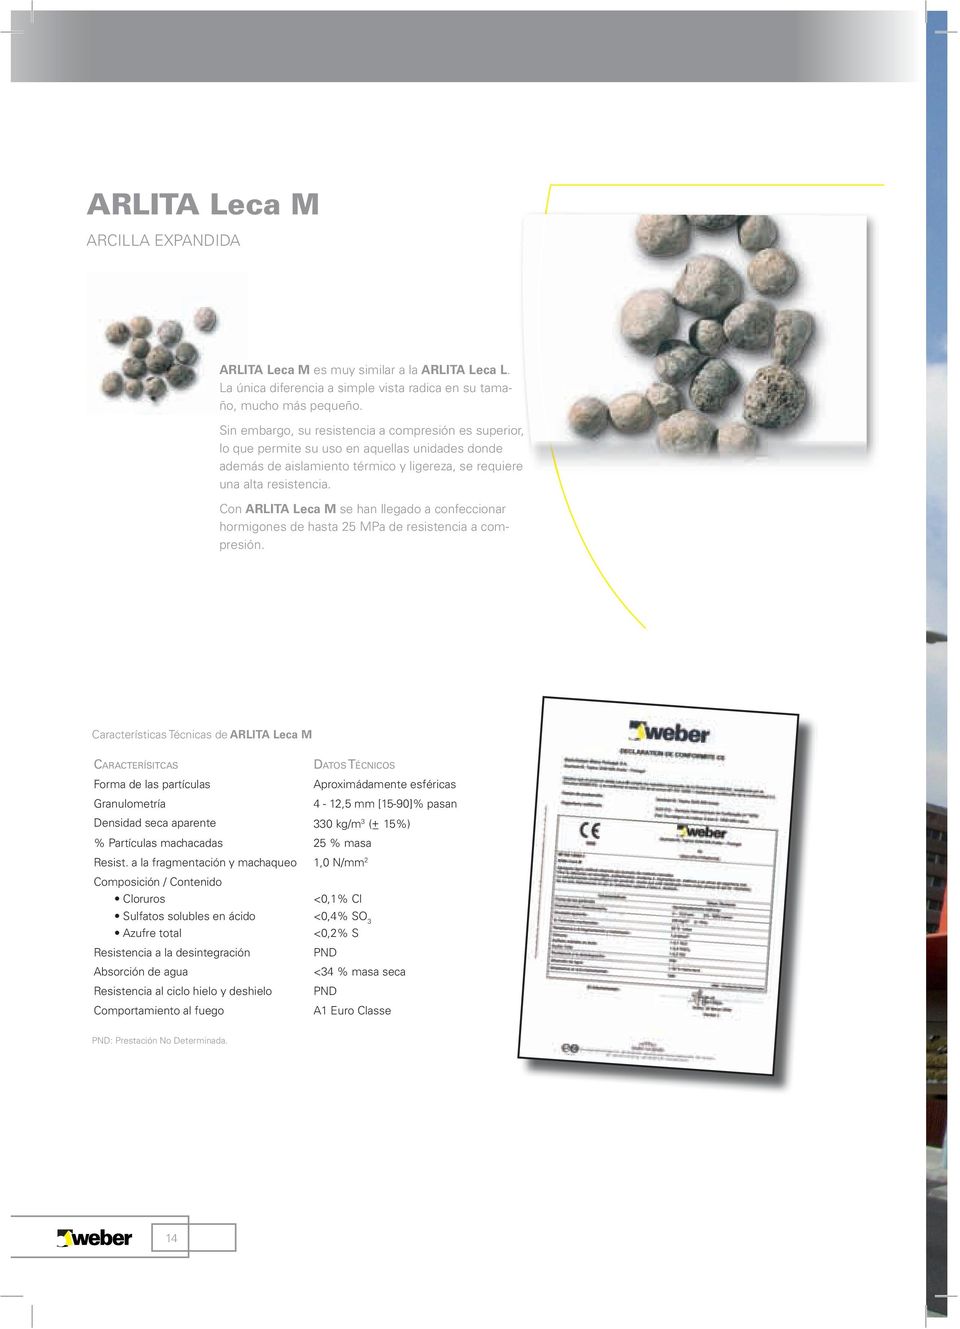 Con ARLITA Leca M se han llegado a confeccionar hormigones de hasta 25 MPa de resistencia a compresión.